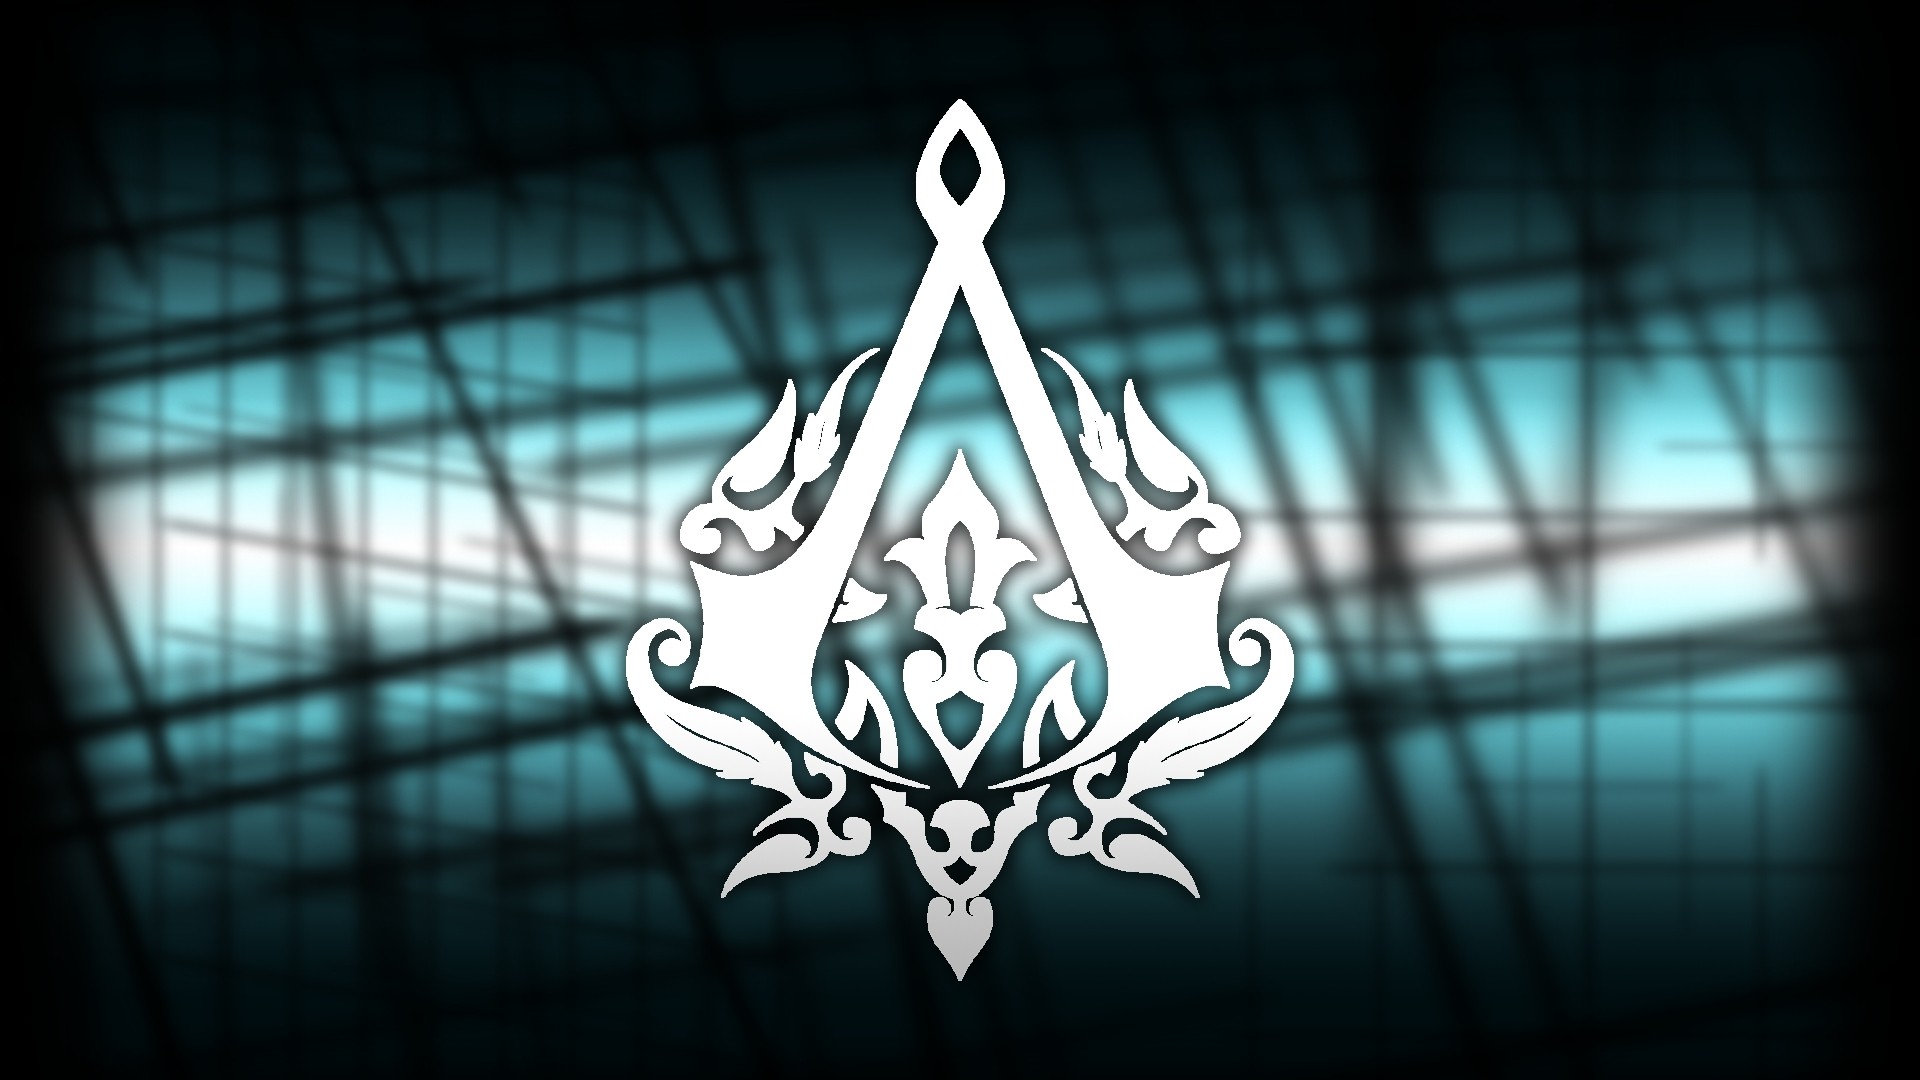 Assassin's Creed Revelations Emblem - HD Wallpaper 